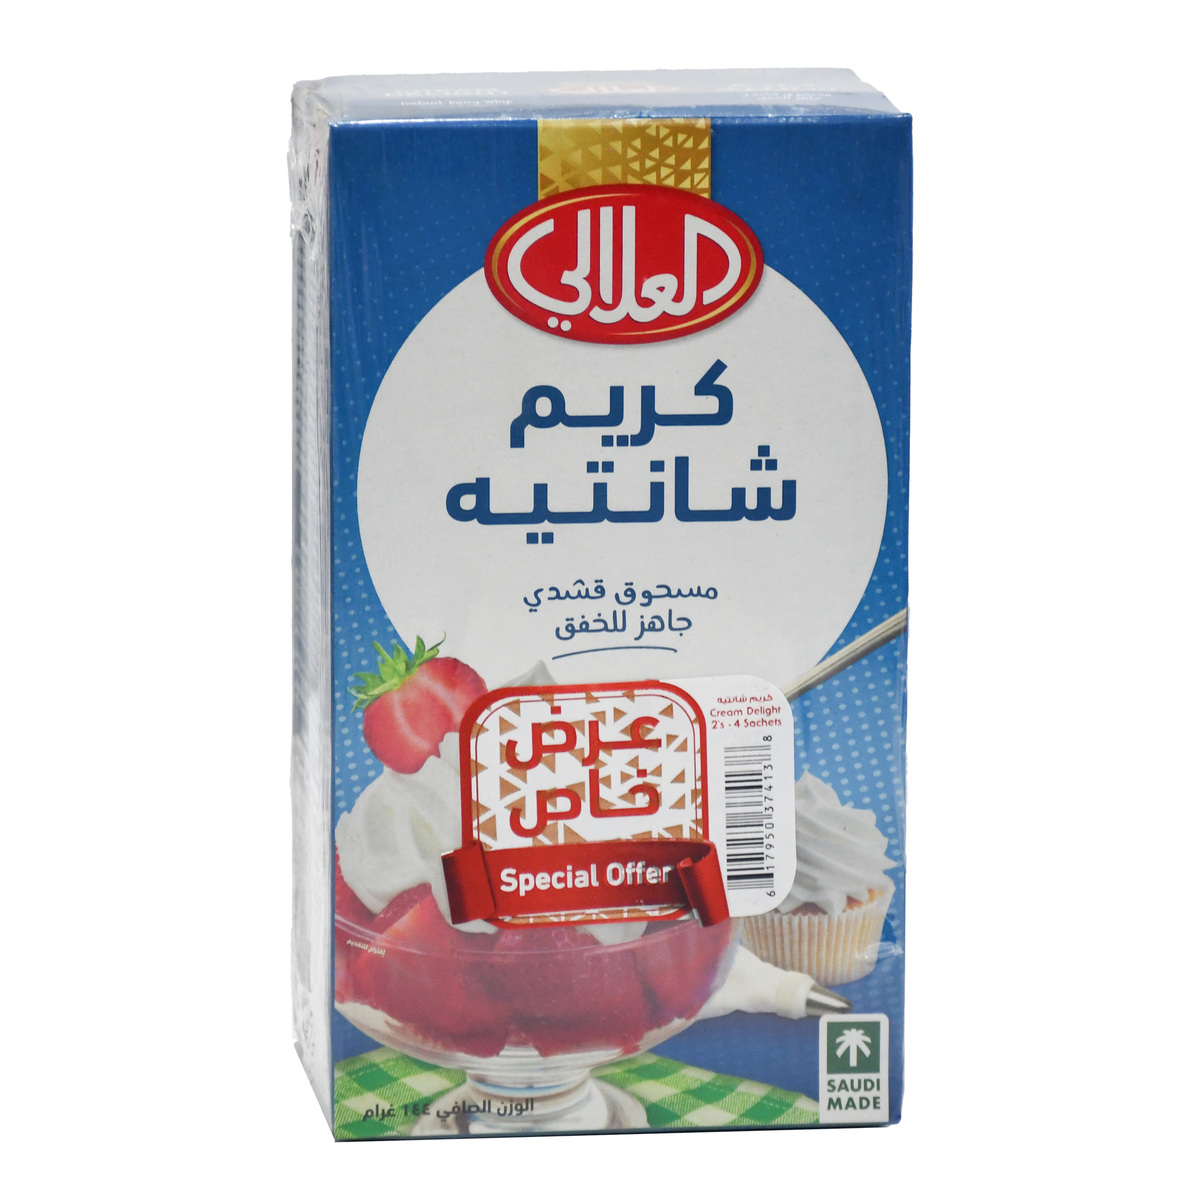 Al Alali Cream Delight Value Pack 2 x 144 g